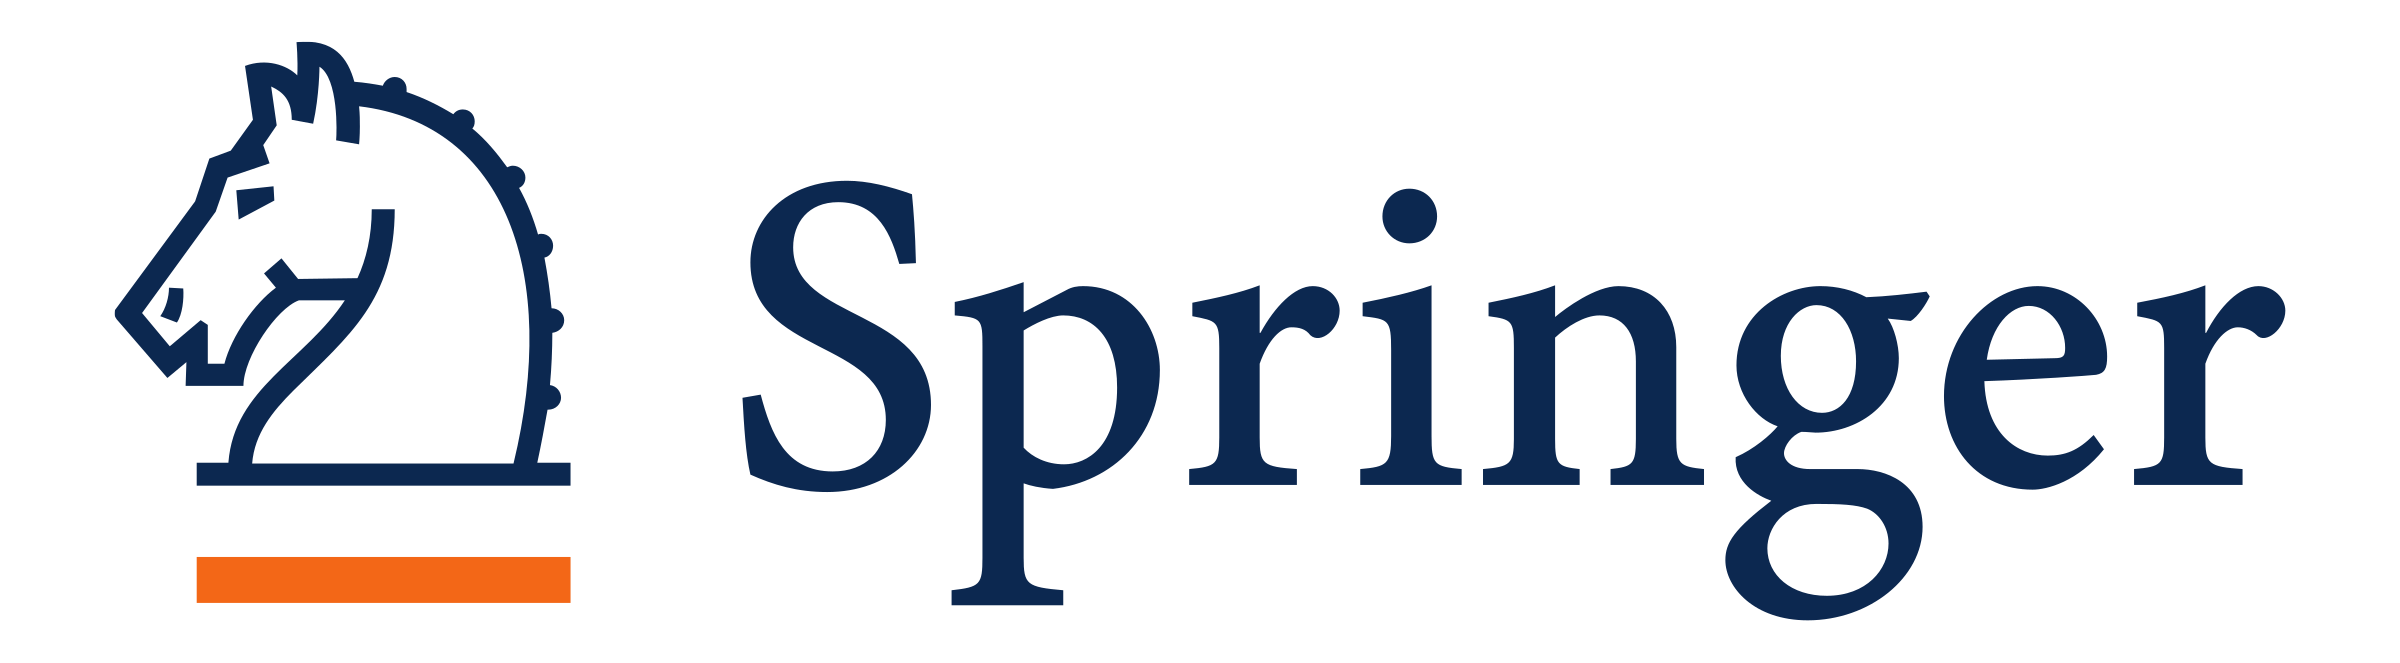 springer-logo-transparent (1)